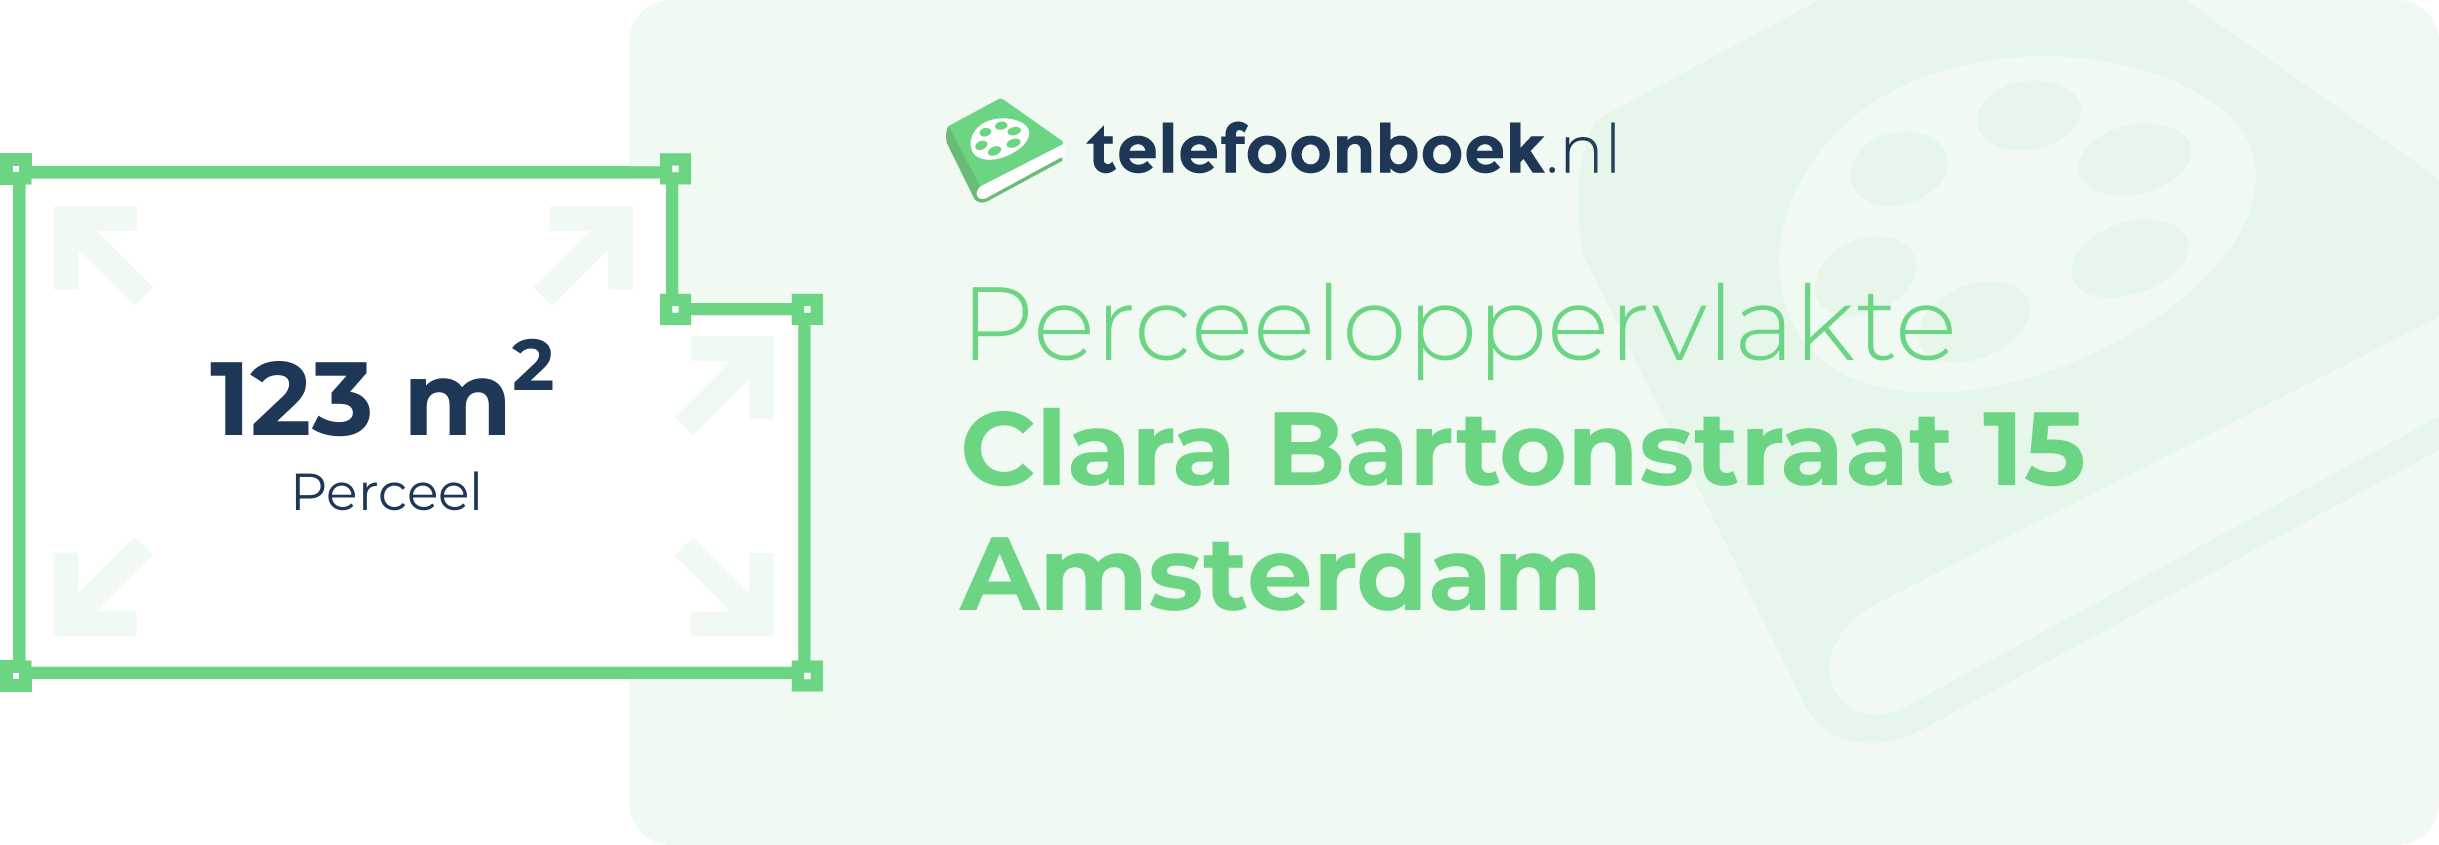 Perceeloppervlakte Clara Bartonstraat 15 Amsterdam